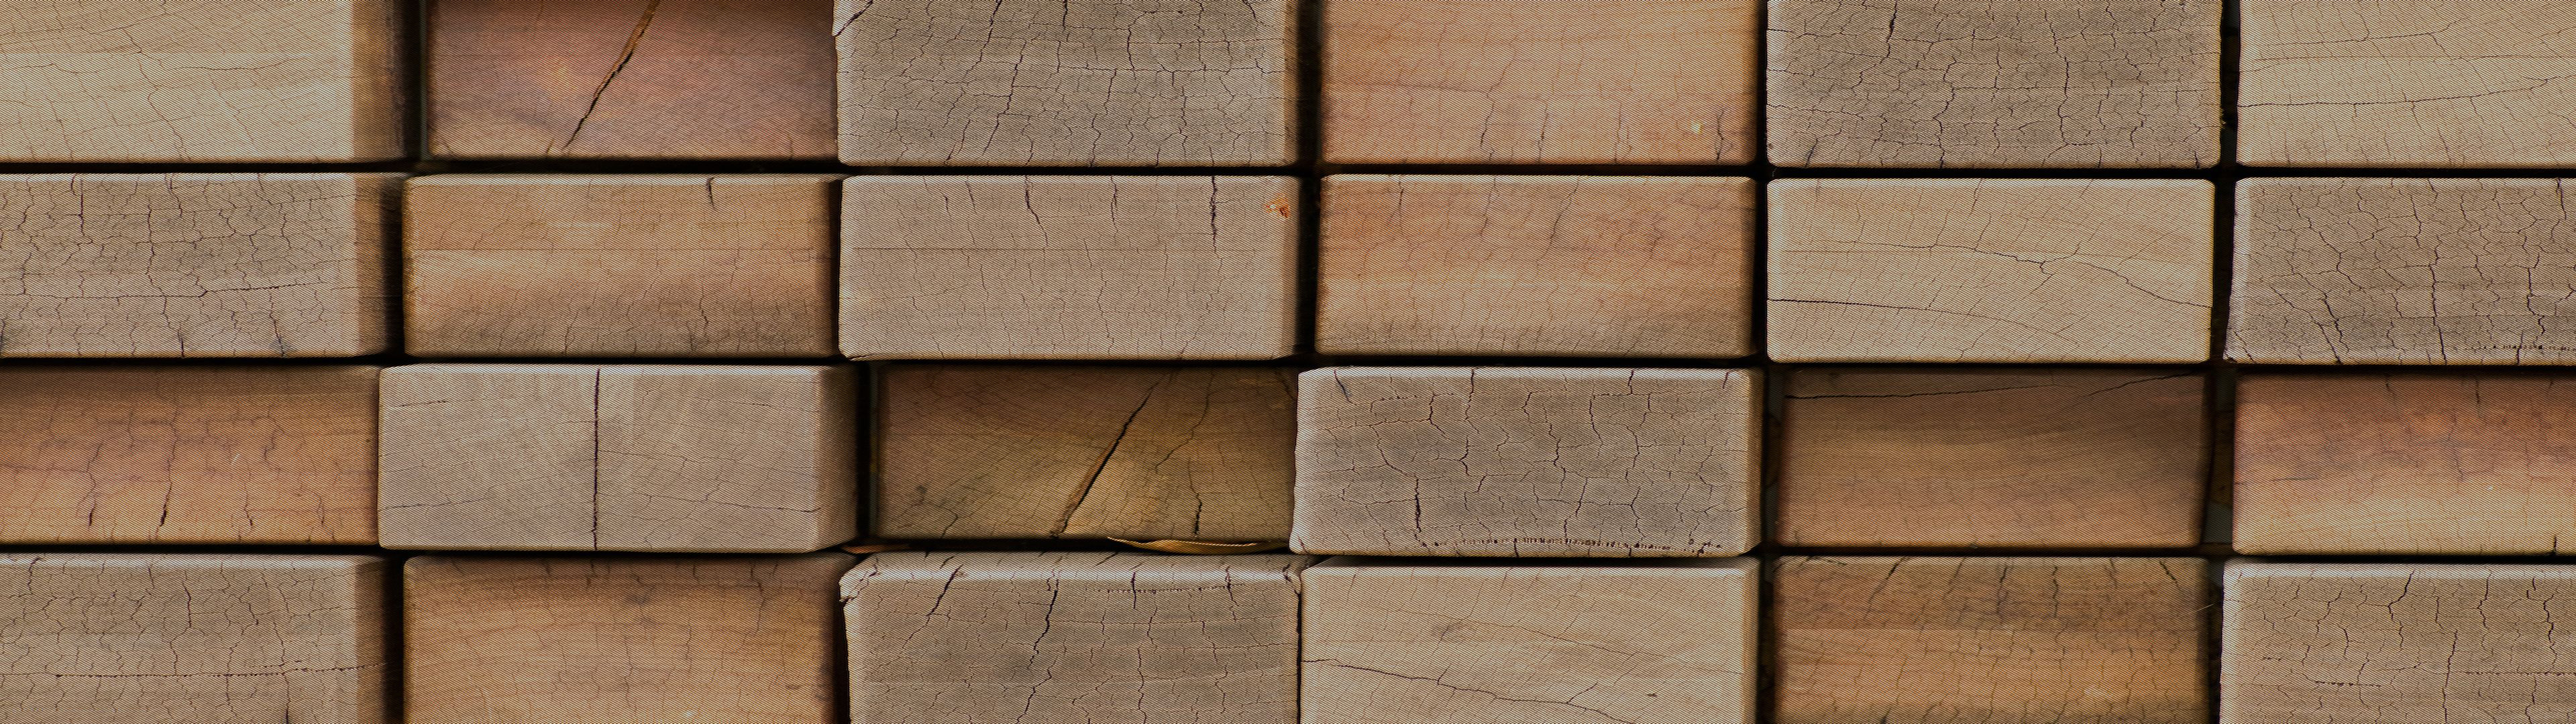 Nghệ thuật gỗ - Gỗ luôn được biết đến như một trong những vật liệu đẹp và tự nhiên nhất để tạo nên những tác phẩm nghệ thuật. Hãy khám phá những tác phẩm nghệ thuật gỗ độc đáo và sáng tạo để cảm nhận được sự vẻ đẹp của chúng.